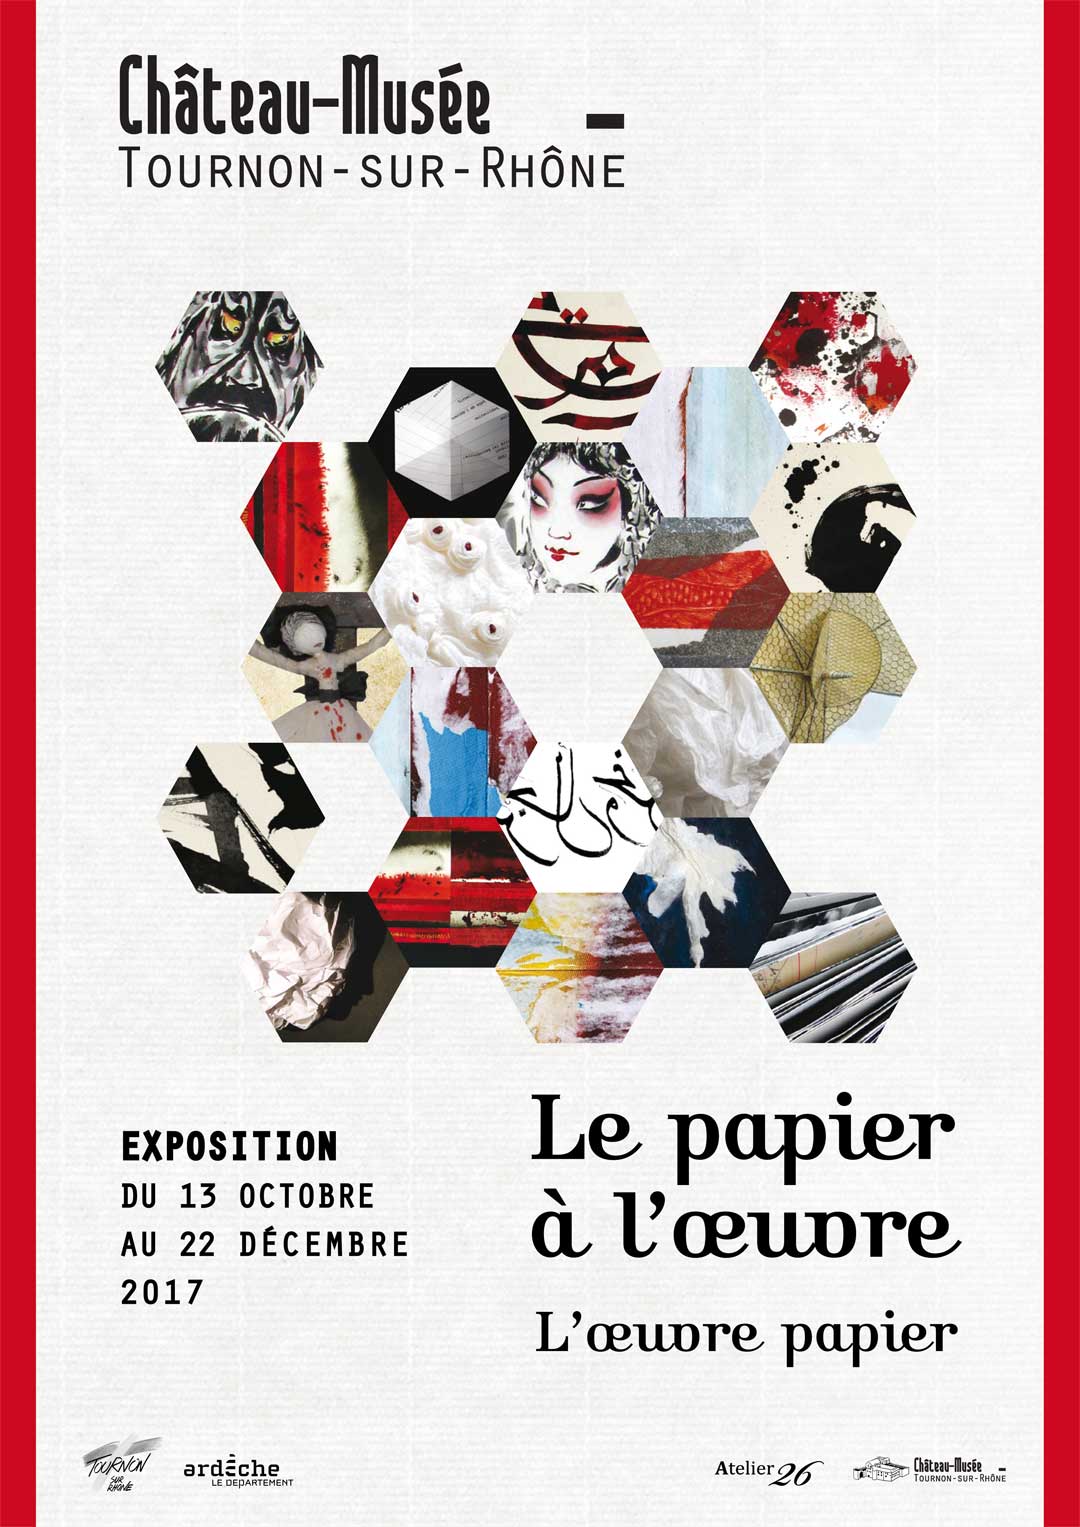 LE PAPIER A L'OEUVRE - L'OEUVRE PAPIER. Exposition au Château-musée du 13 octobre au 22 décembre 2017.